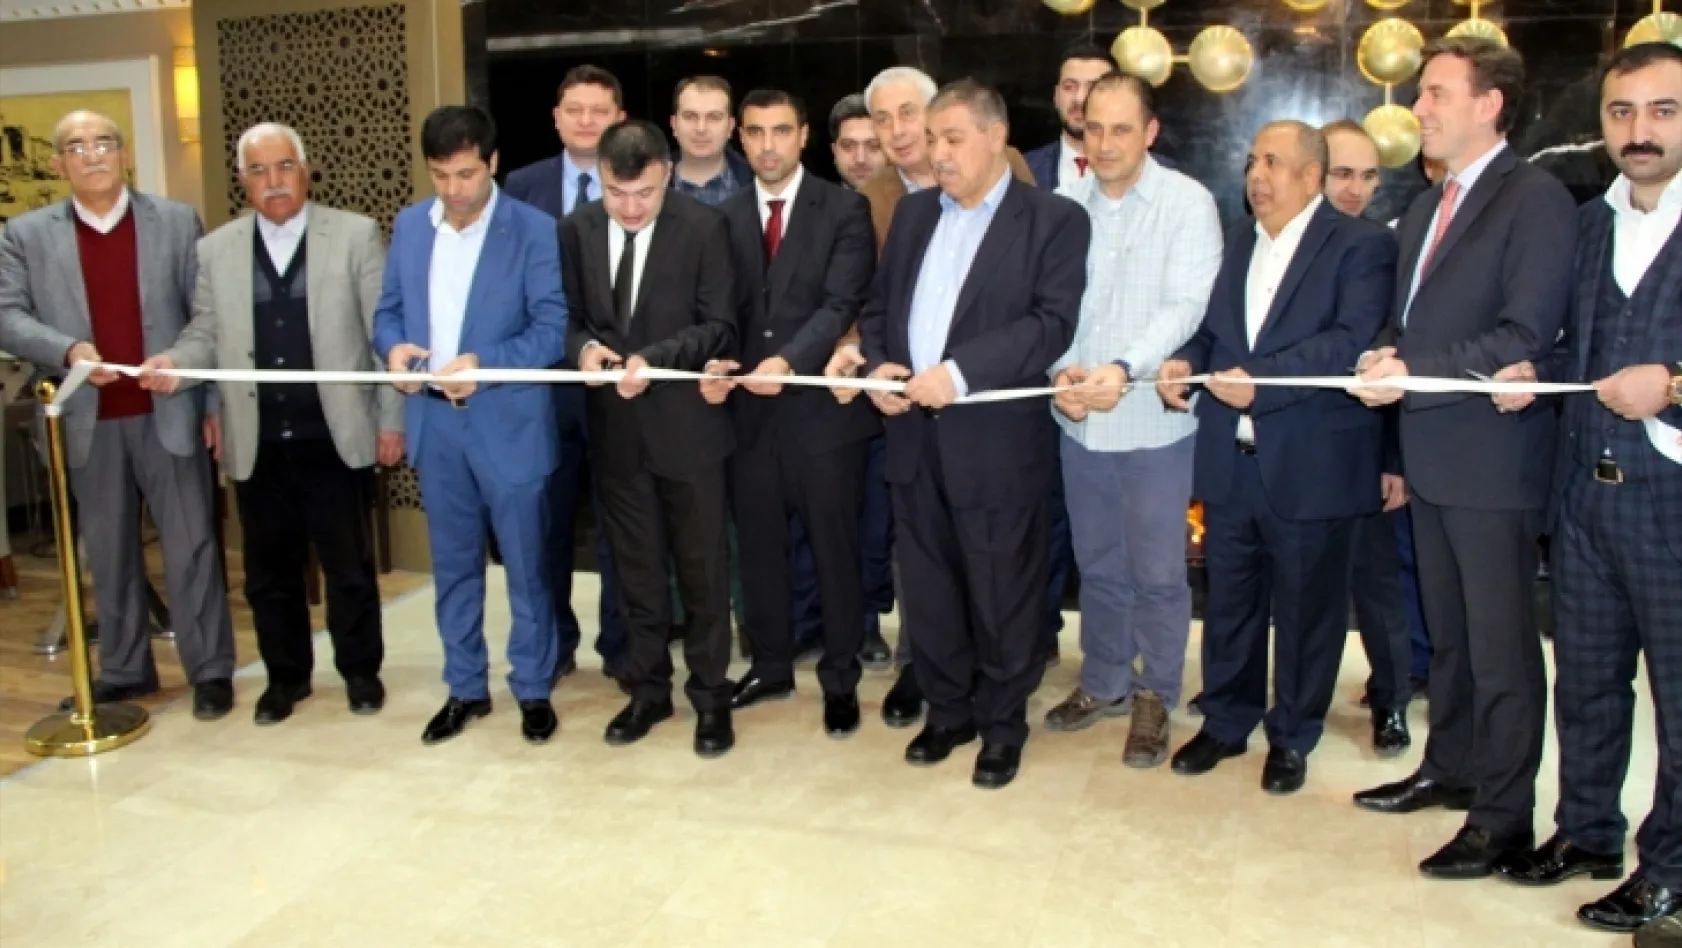 DoubleTree by Hilton Oteli Elazığ'da açıldı